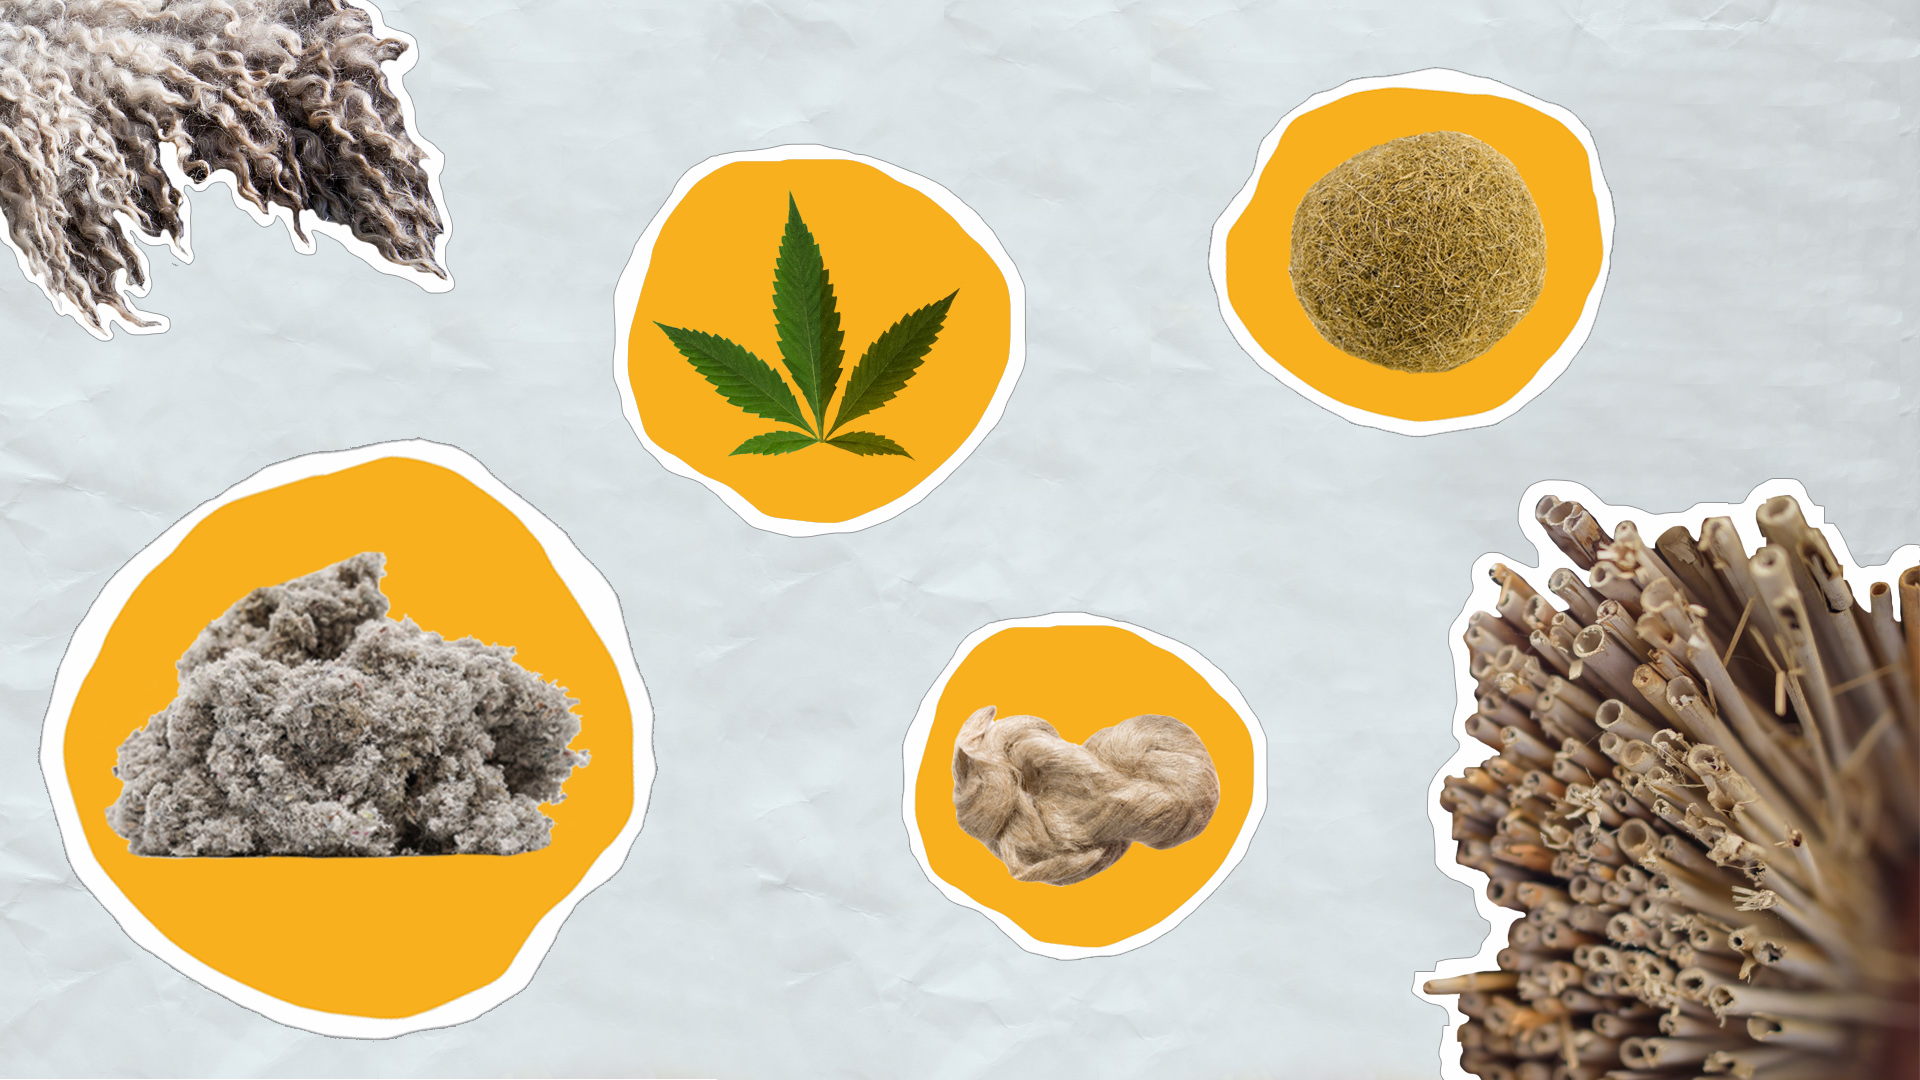 Collage aus verschiedenen ökologischen Dämmstoffen: Schafwolle, Hanf, Zellulose, Schilf, Jute und Seegras